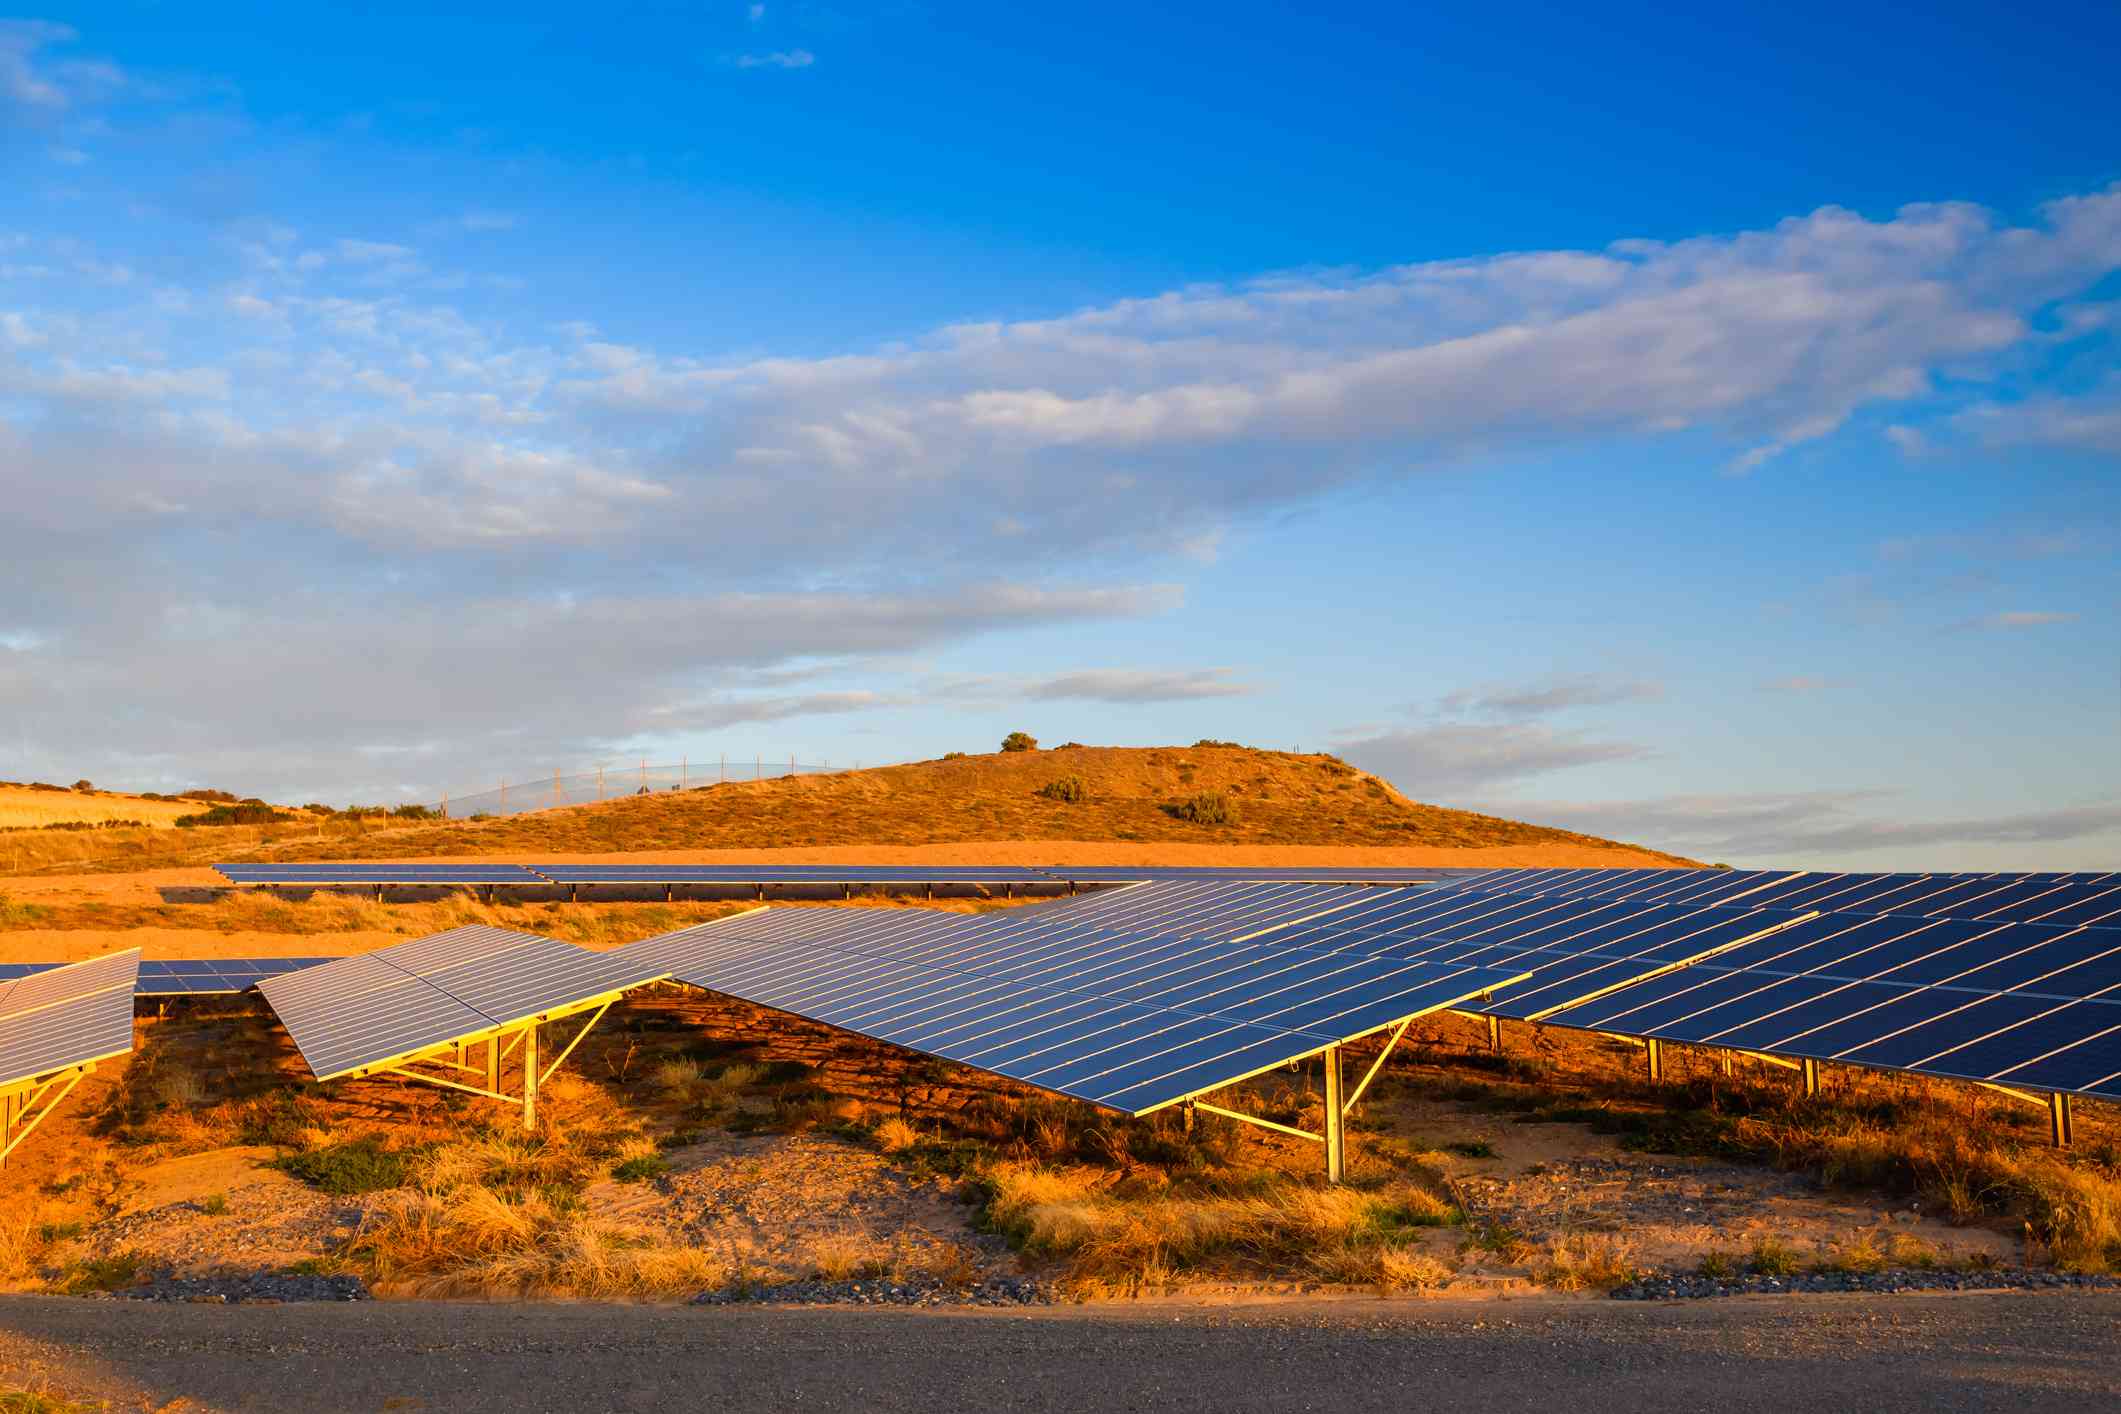 Solar panels in an orange desert landscape